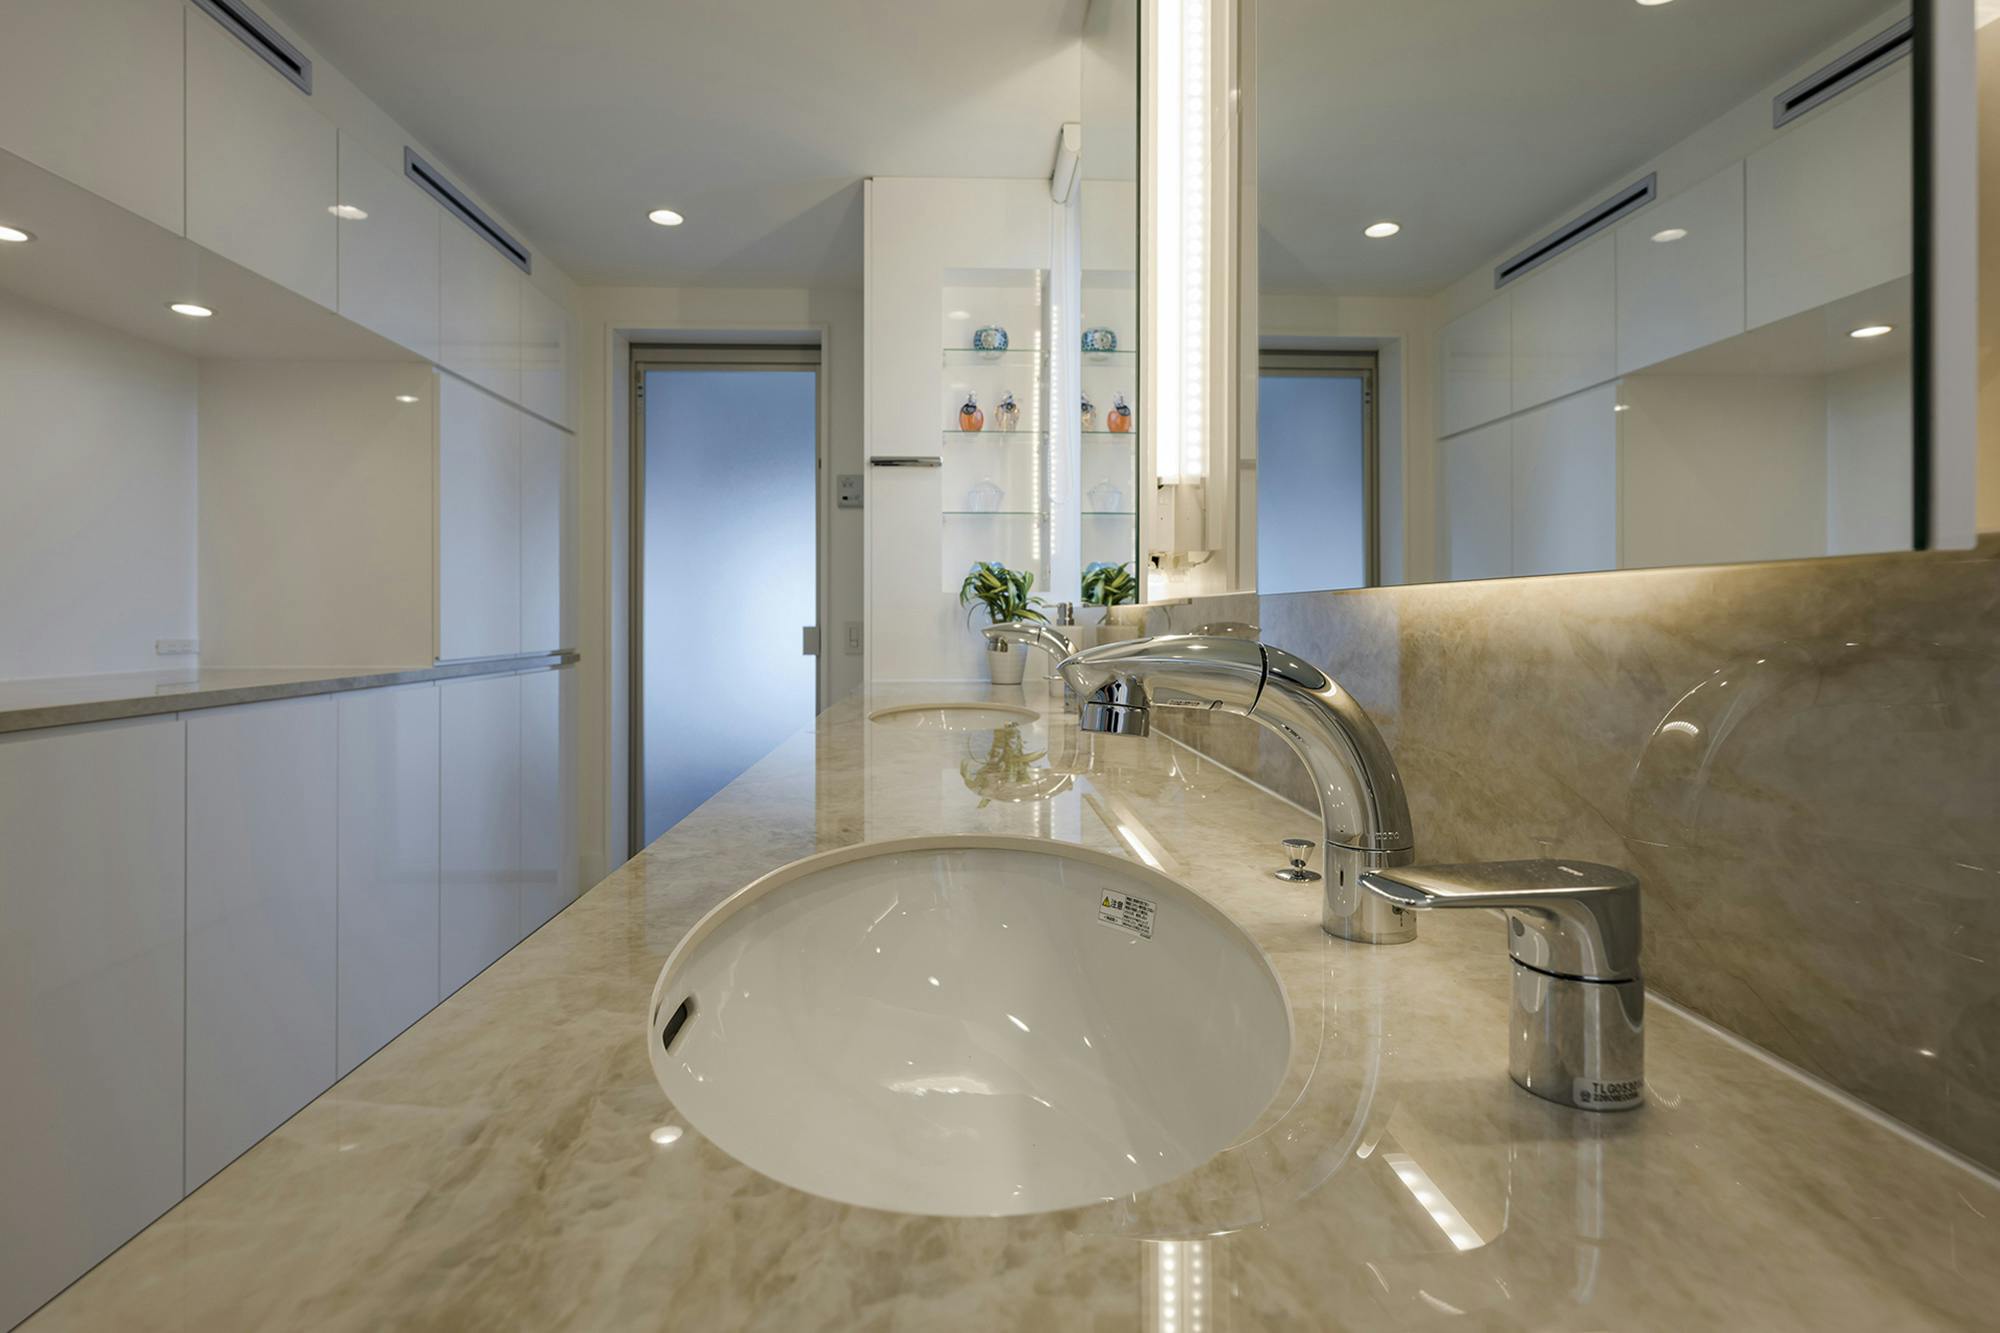 Numero immagine 33 della sezione corrente di DKTN and Silestone enhance the kitchen and bathroom design in a Tokyo home di Cosentino Italia